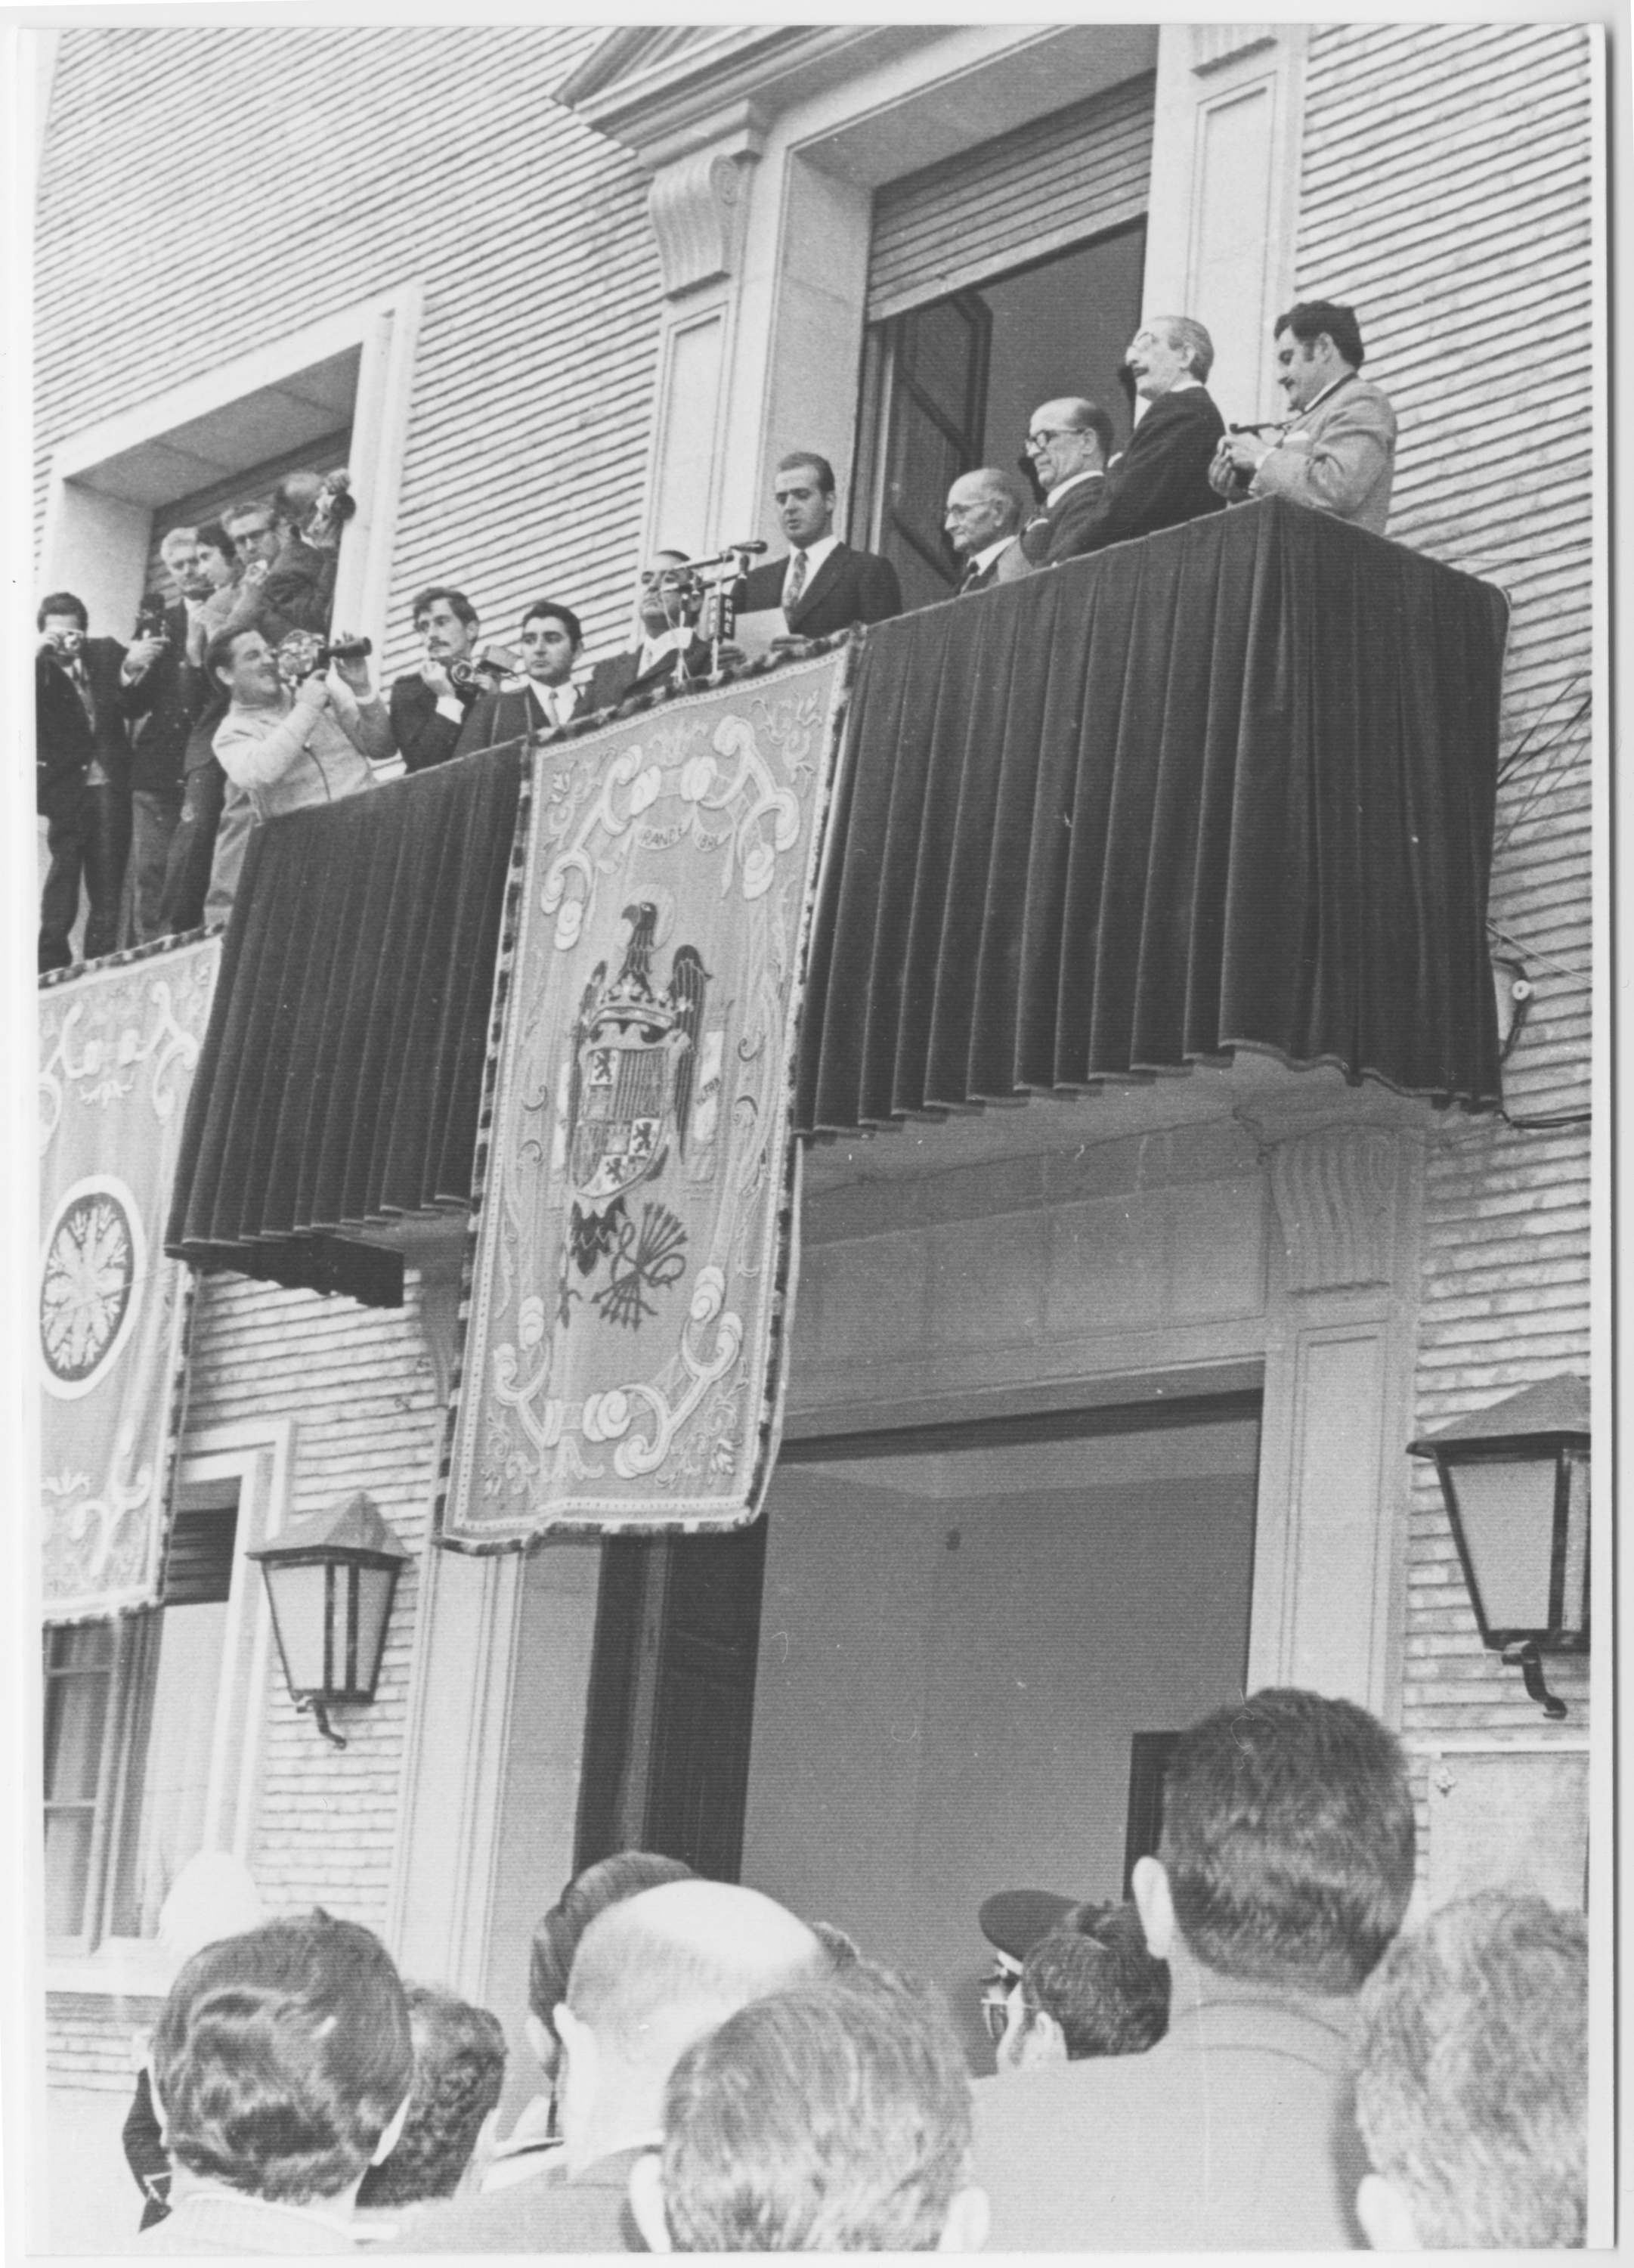 Inauguración Sede Comunidad de Regantes del Canal de Aragón y Cataluña por el Príncipe Juan Carlos. 1970.